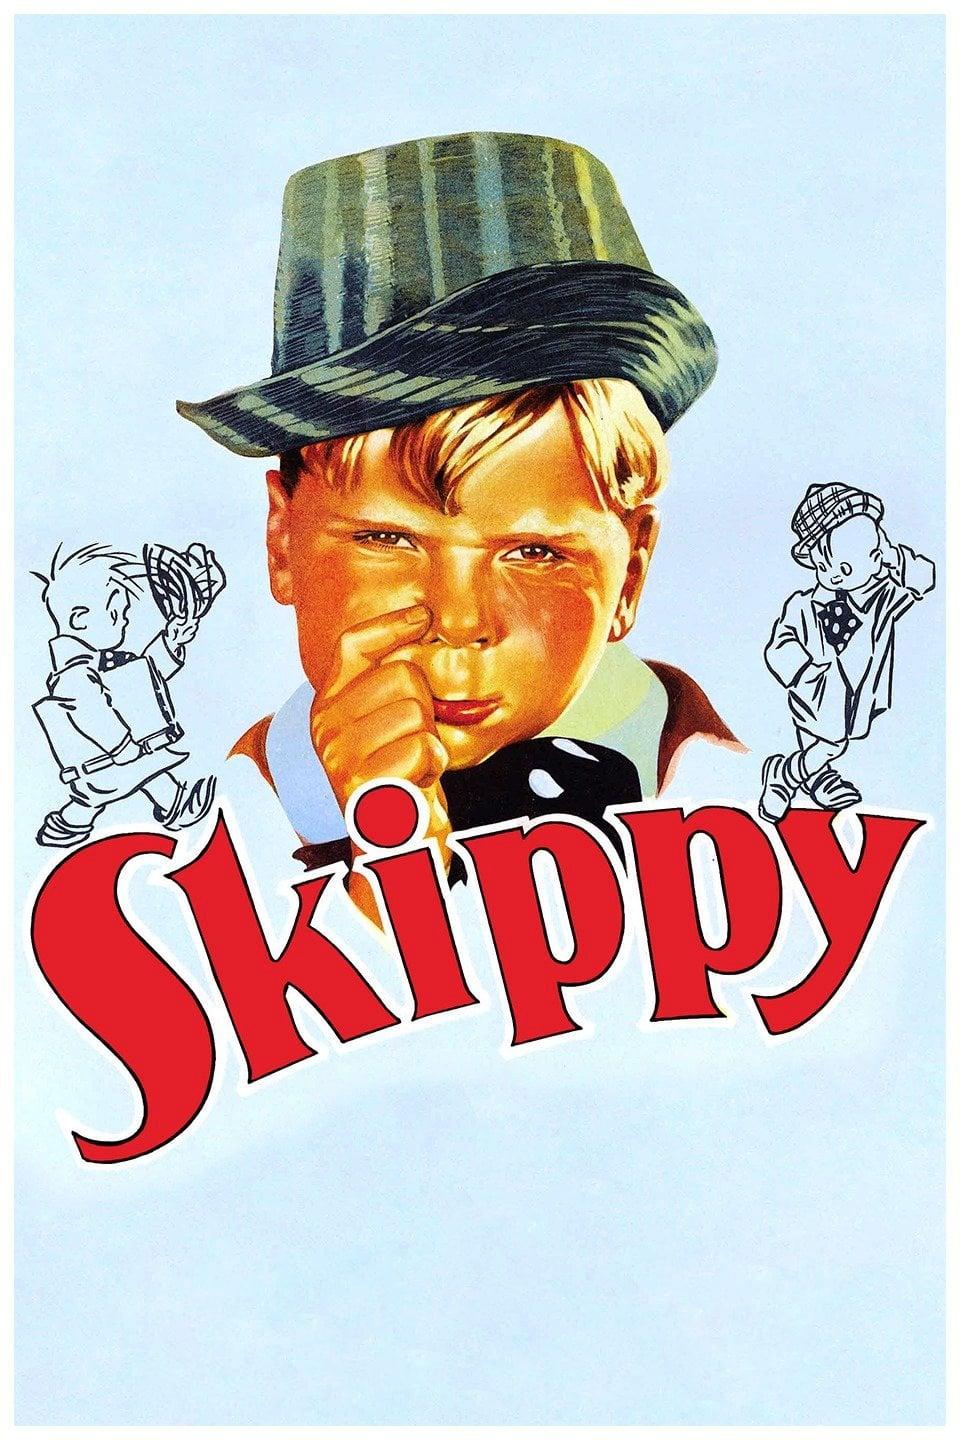 Skippy poster